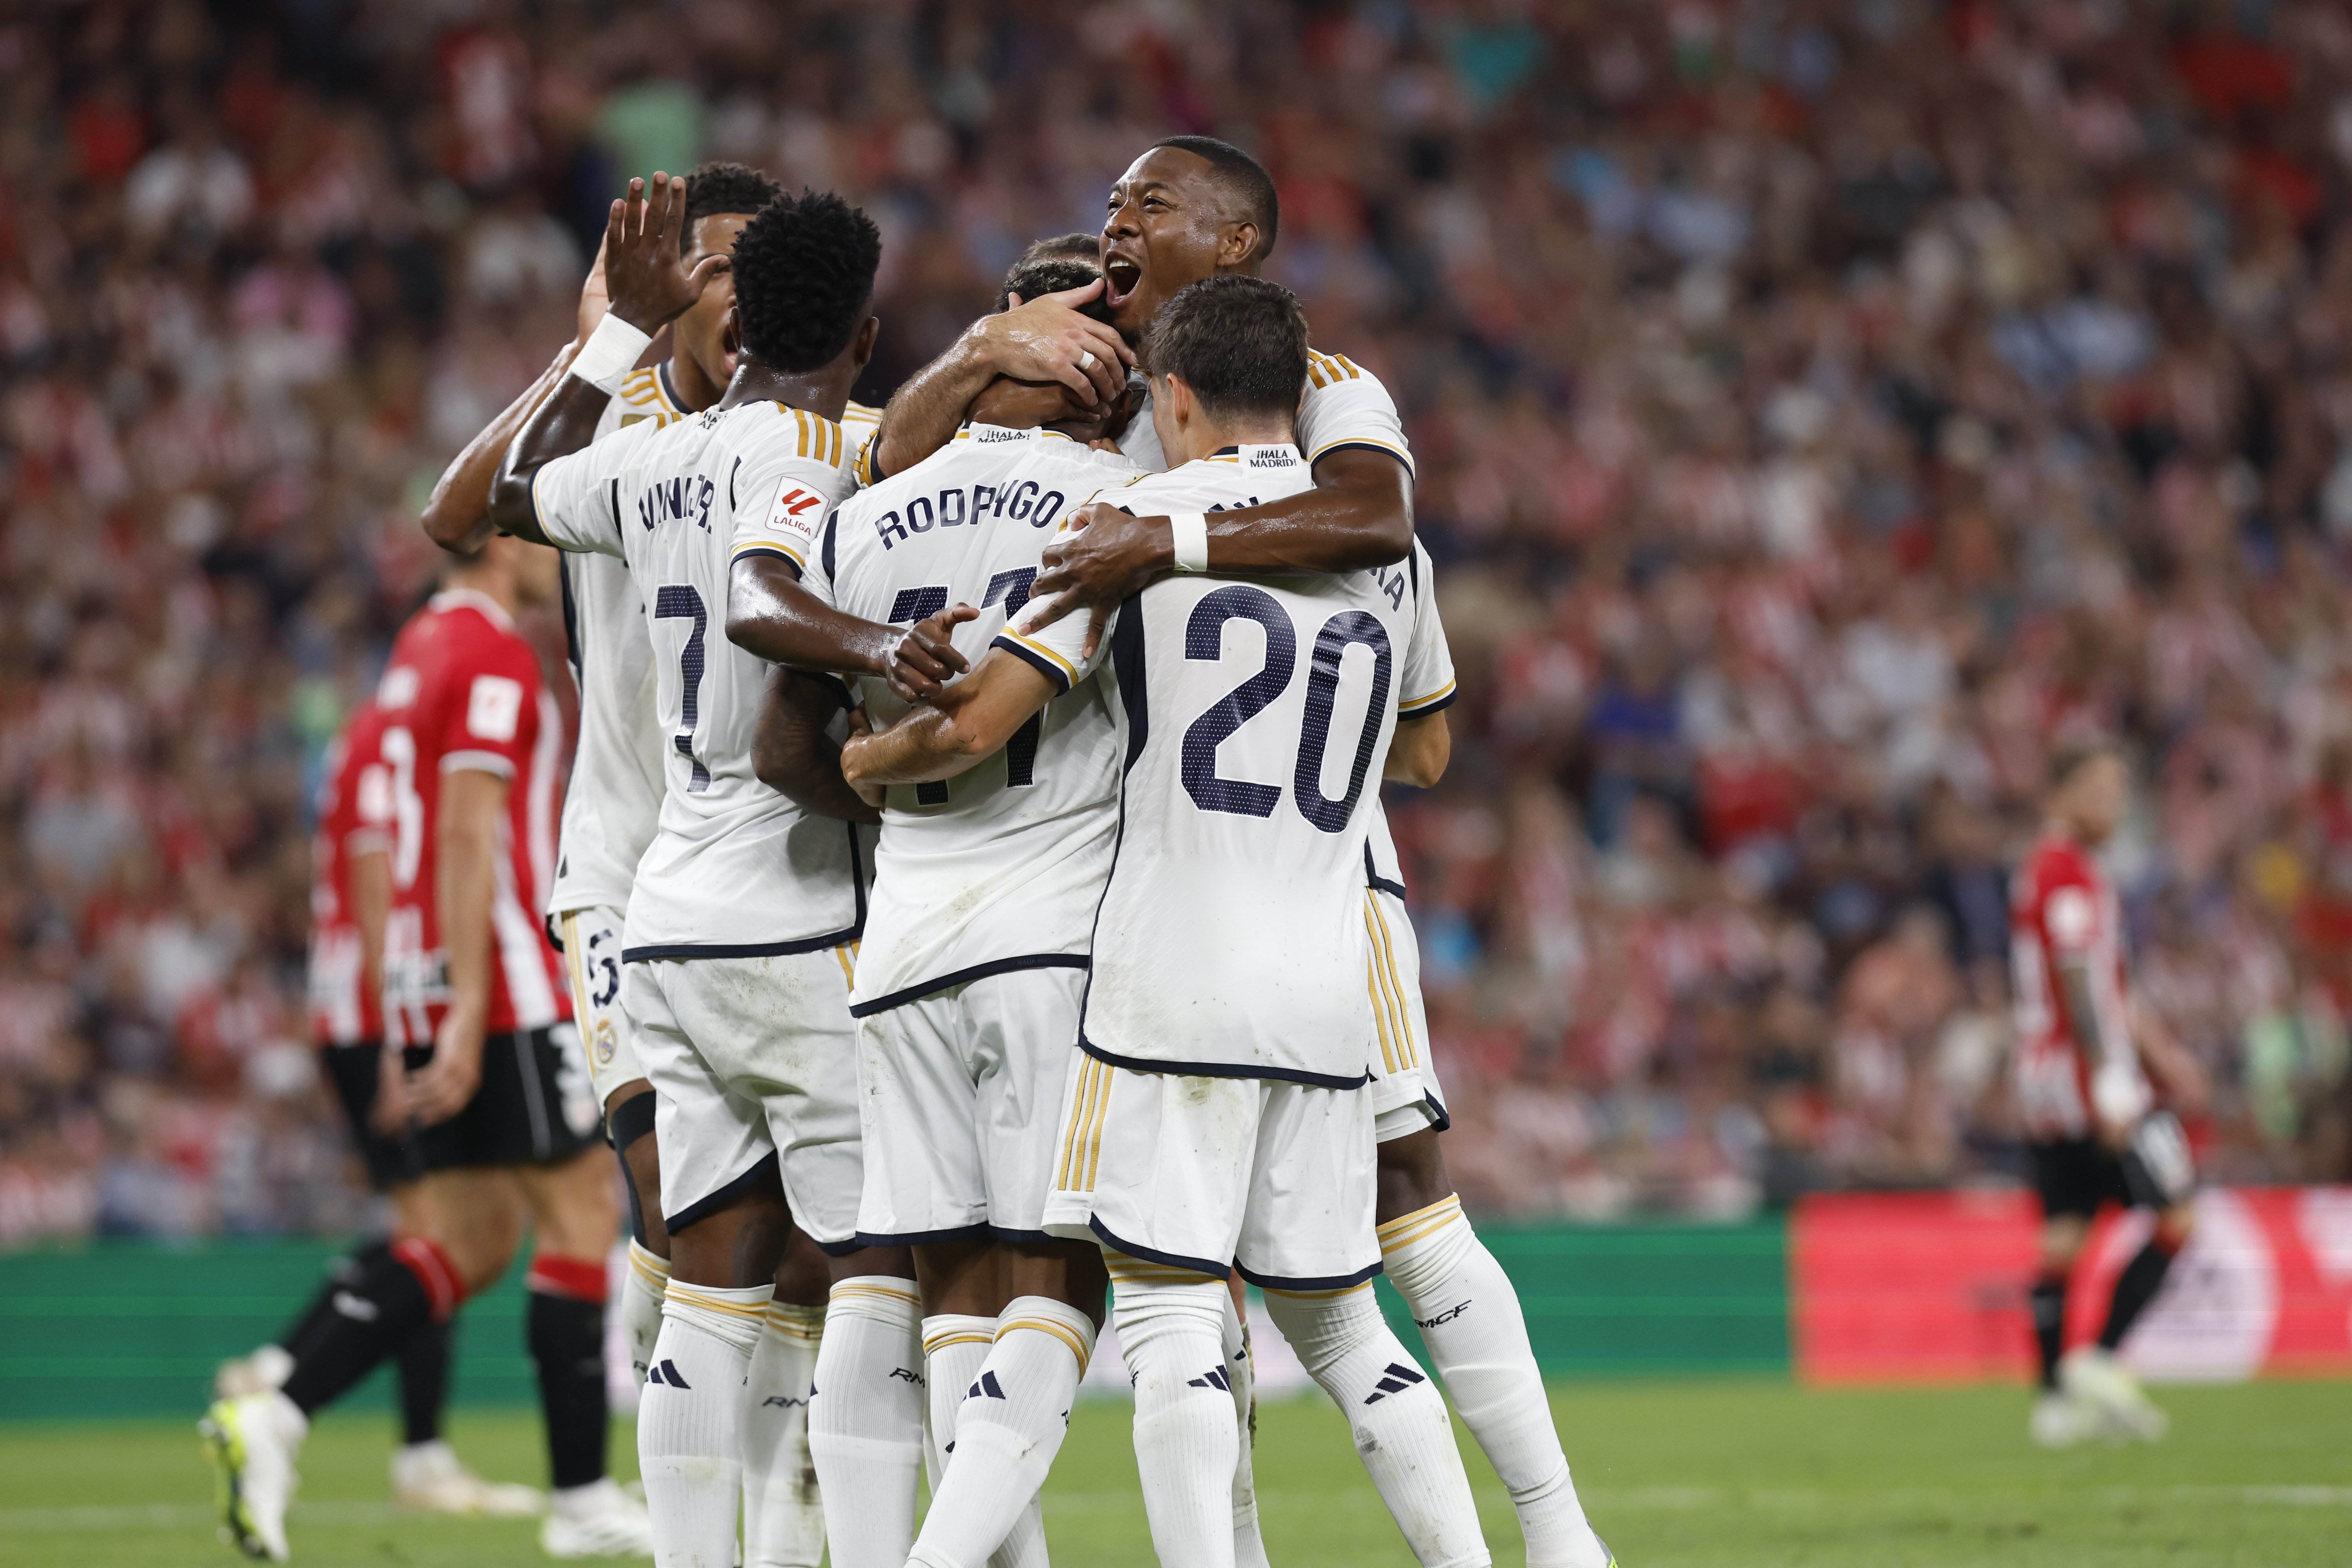 Un Reial Madrid molt efectiu torç l'Athletic Club per començar la Lliga amb pas ferm (0-2)